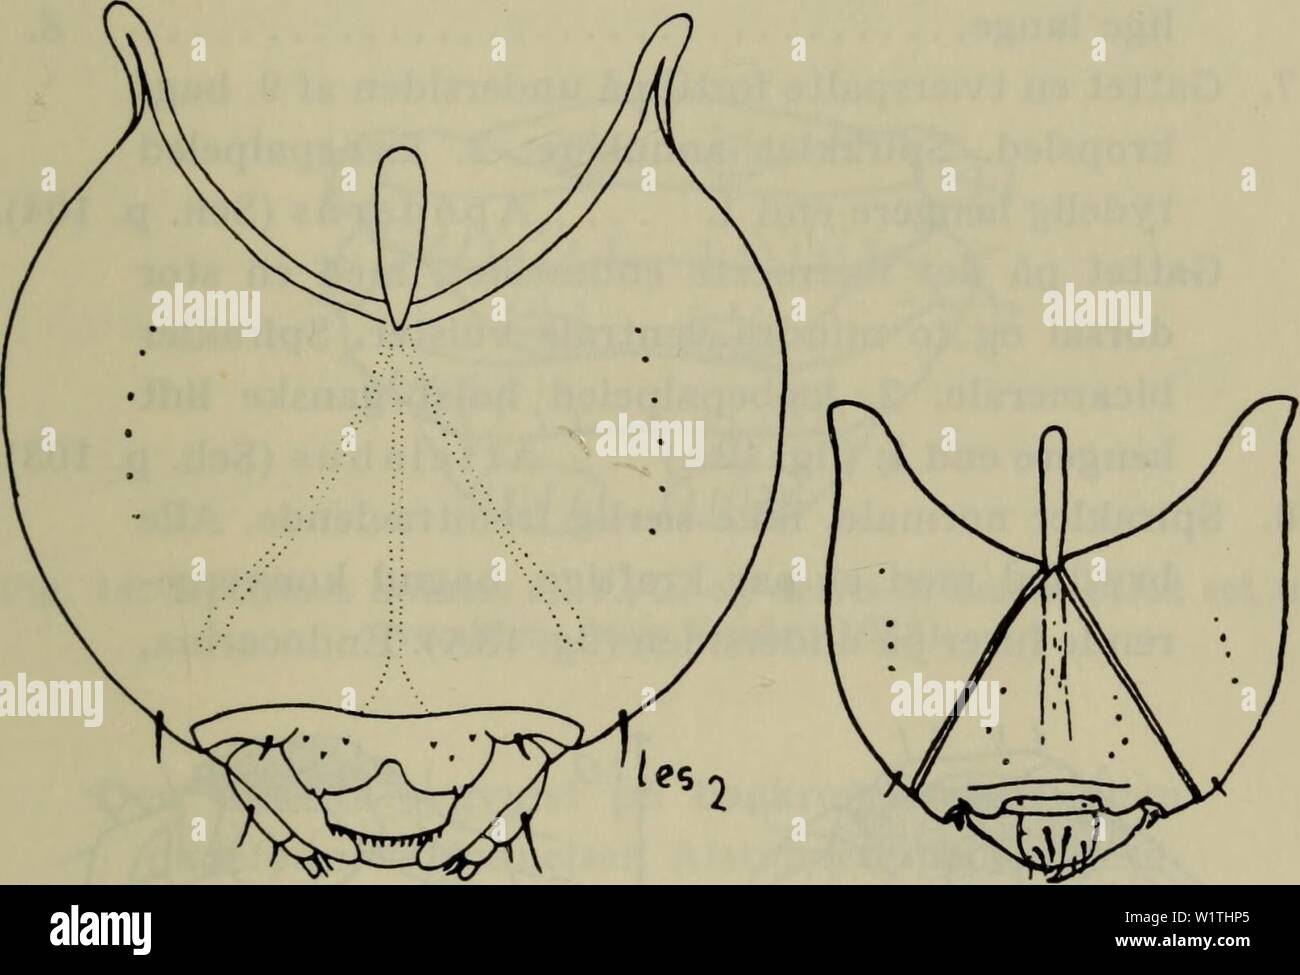 Archive image from page 486 of Danmarks fauna; illustrerede haandbøger over. Danmarks fauna; illustrerede haandbøger over den danske dyreverden..  danmarksfaunaill69dans Year: 1907 483 2B2). Larver ofte i bladruller på forskellige løv- træer (Rhynchitinae) 6. 5. Hovedet stærkt tilsmalnet bagud (fig. IIA). Krop- pen forholdsvis slank Rhynchaenus. (v. E. 38 p. 22; Sch. p. 126). Hovedet ikke eller næppe tilsmalnet bagud (fig. IIB). Kroppen meget bred . . Rhamphus (Sch. p. 131).    A B Fig. 11. A Rhynchaenus fagi L. (Scherf); B Rhamphus pulicarius Herbst. Hovedets overside, (van Emden 1938). Stock Photo